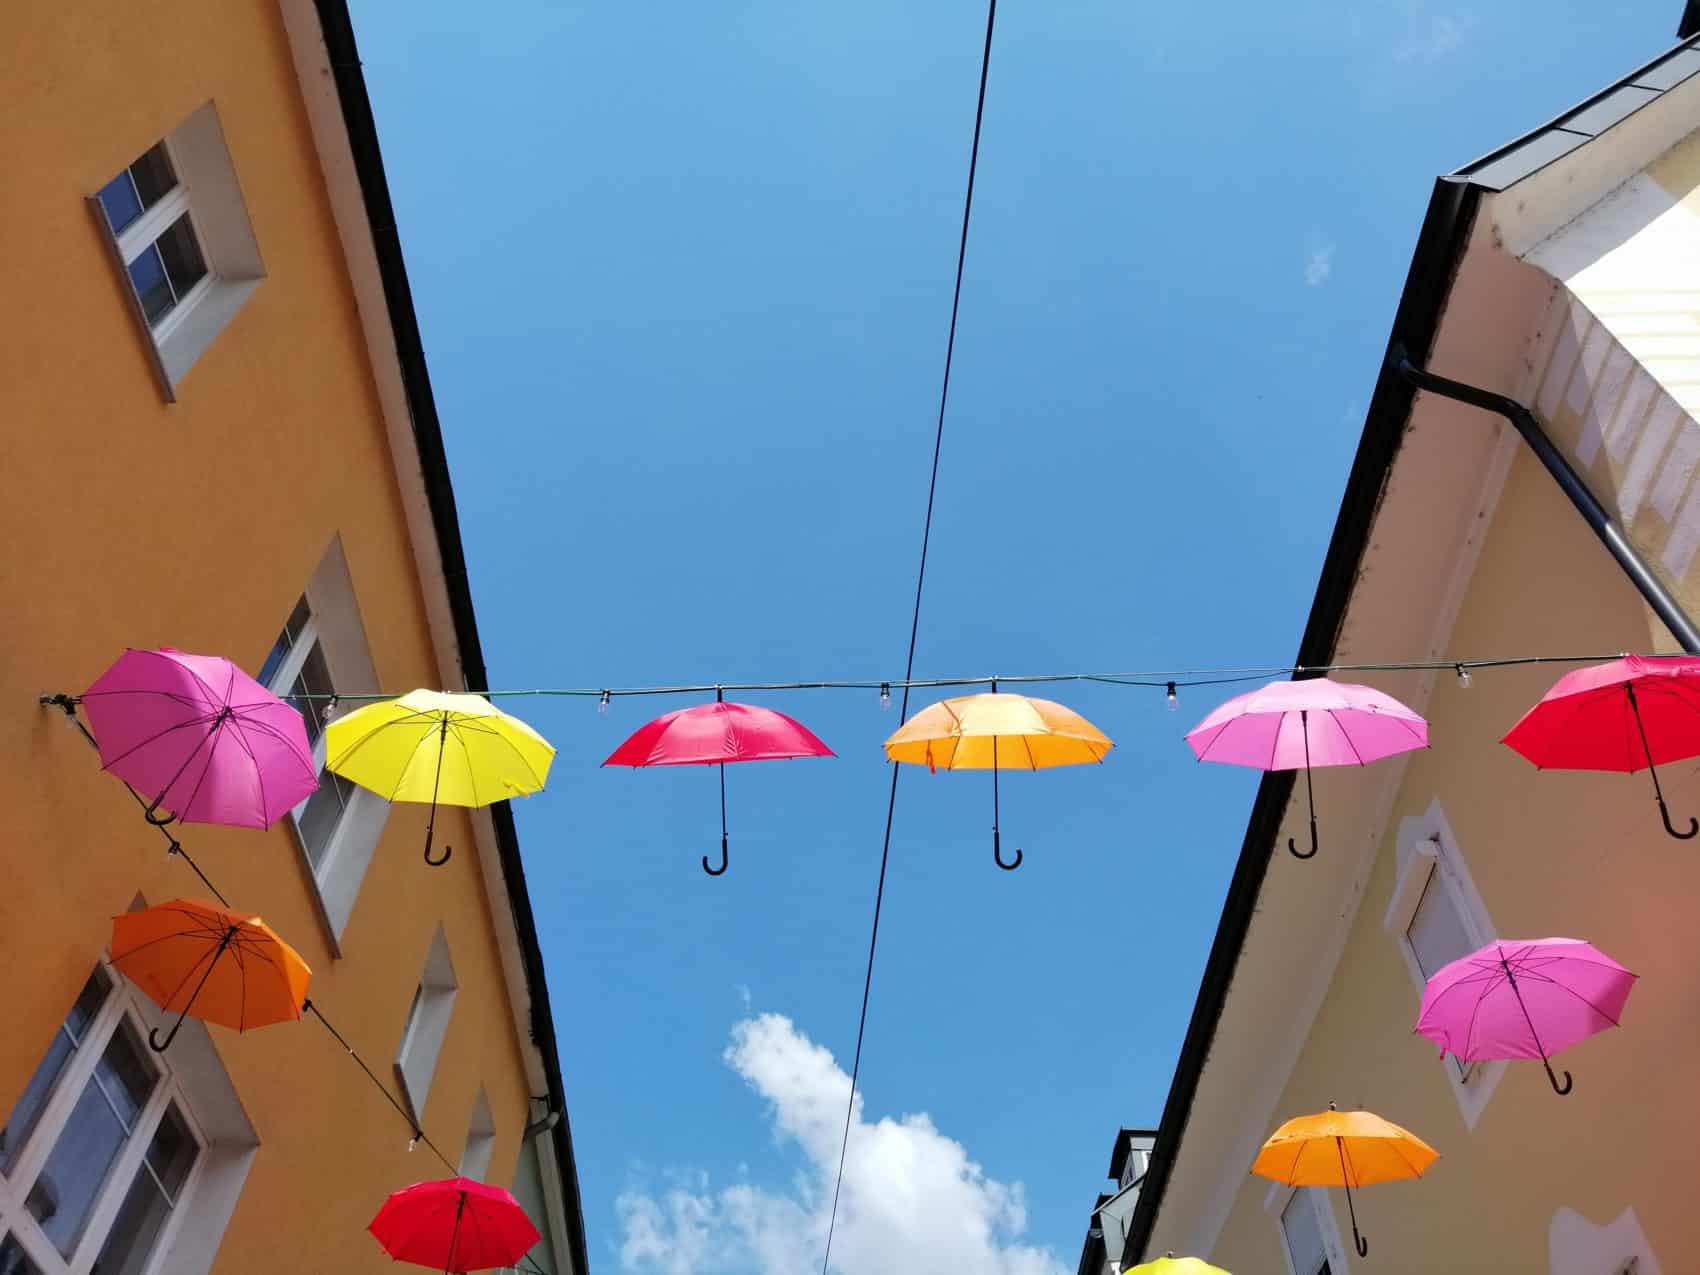 Bunte Häuserfassaden – bunte Schirme. Gute Kombination (c) 5min.at